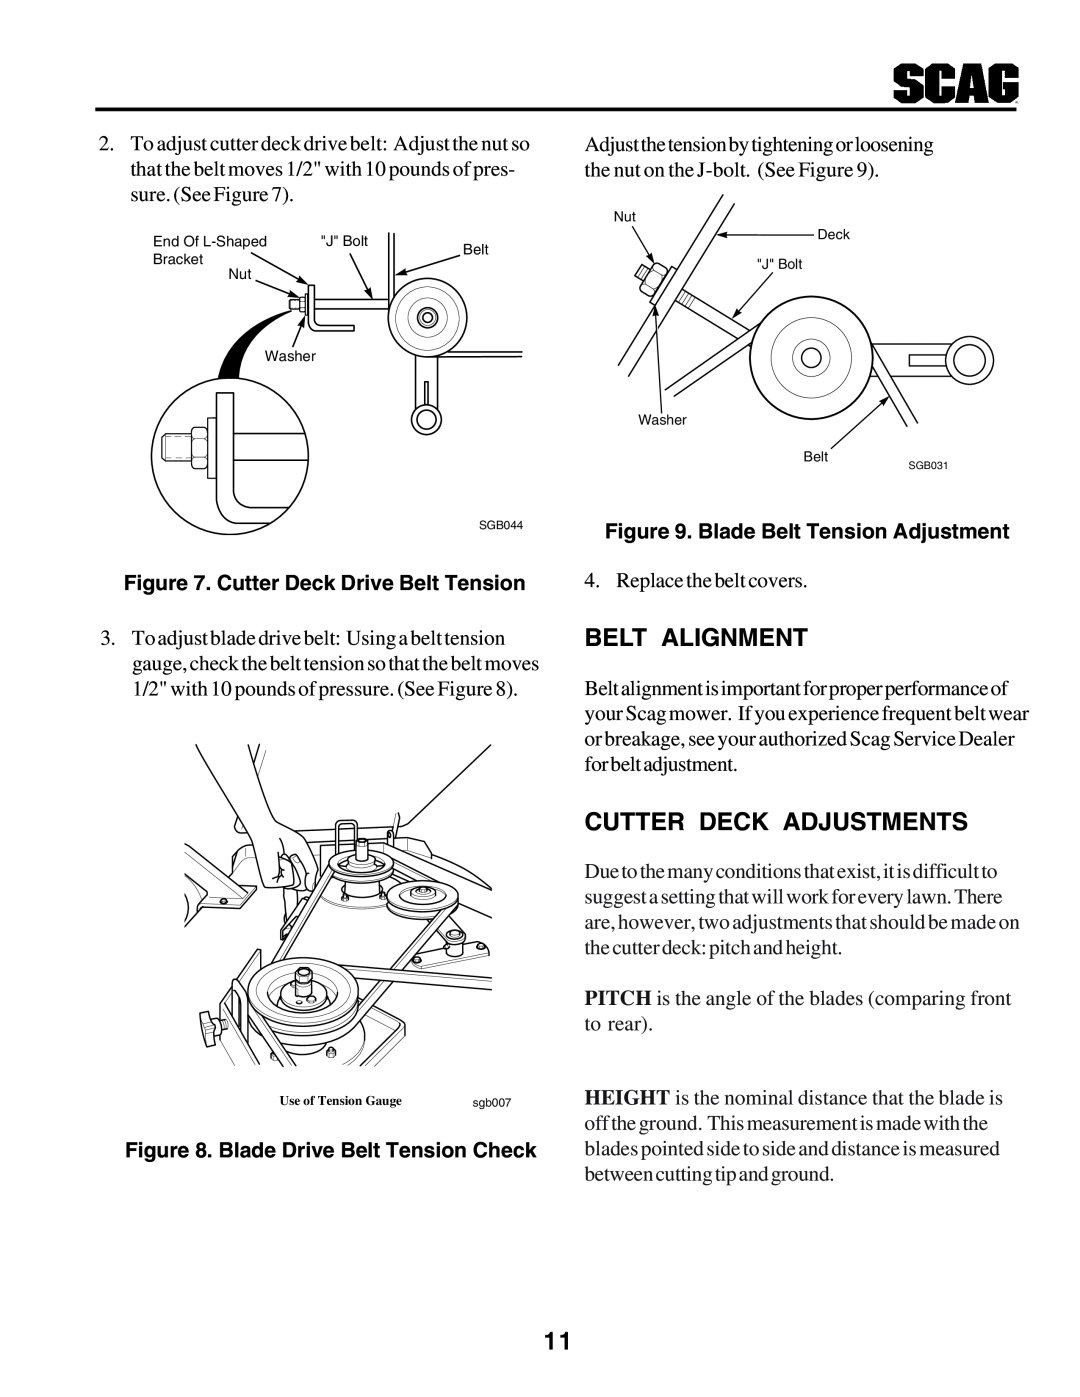 Scag Power Equipment STHM manual Belt Alignment, Cutter Deck Adjustments, Cutter Deck Drive Belt Tension 